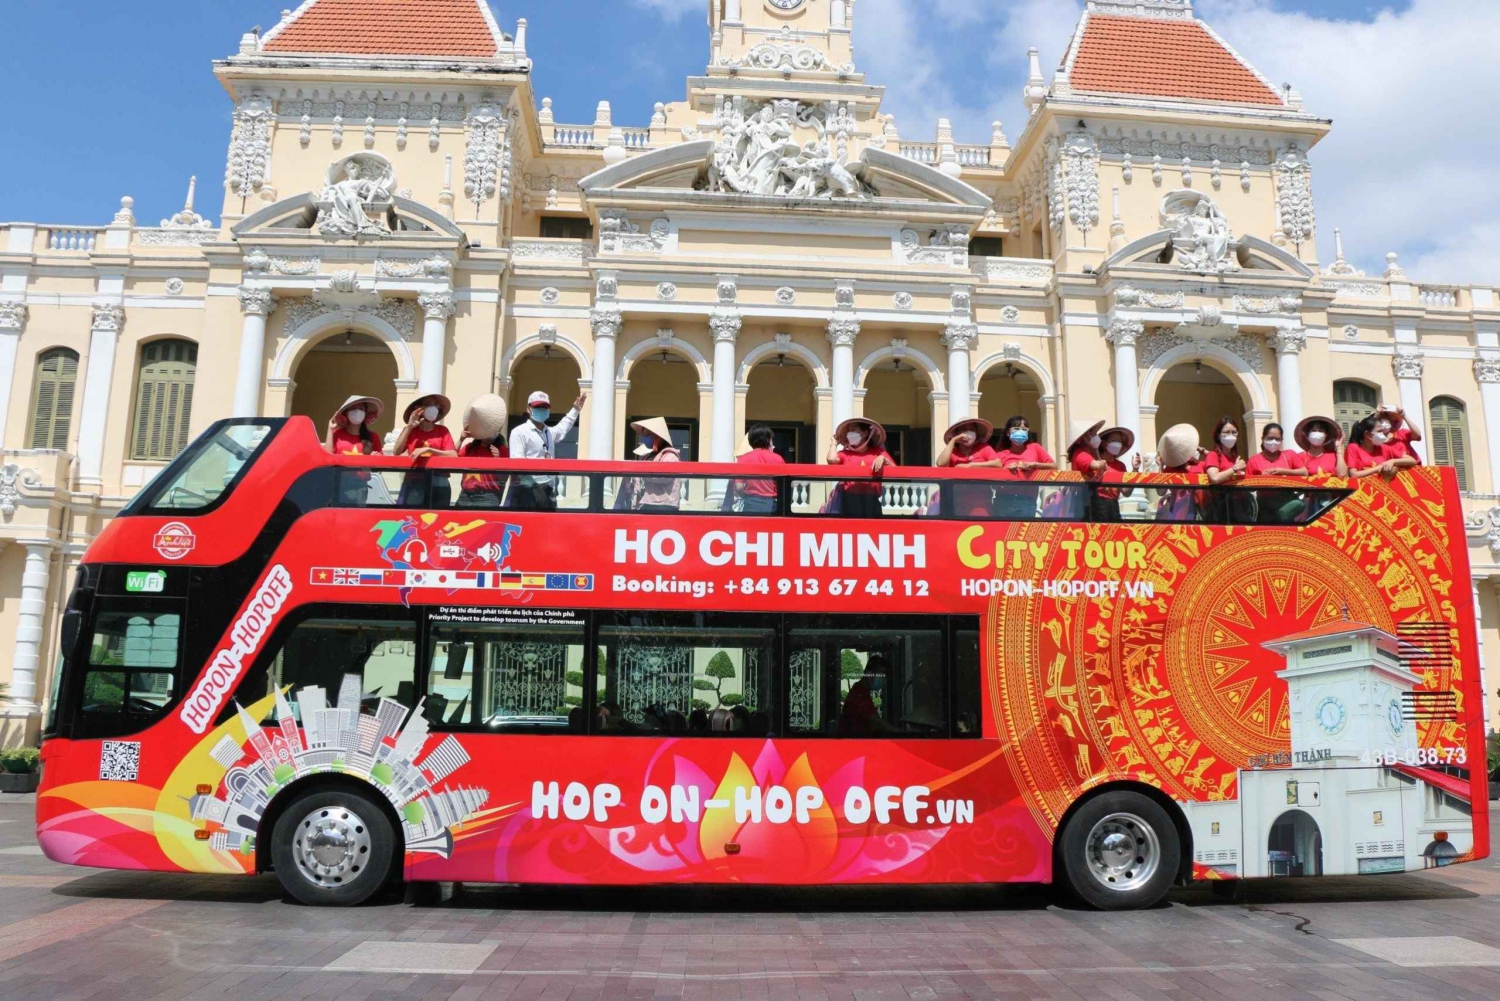 Cidade de Ho Chi Minh: tour de ônibus hop-on hop-off de 4 horas